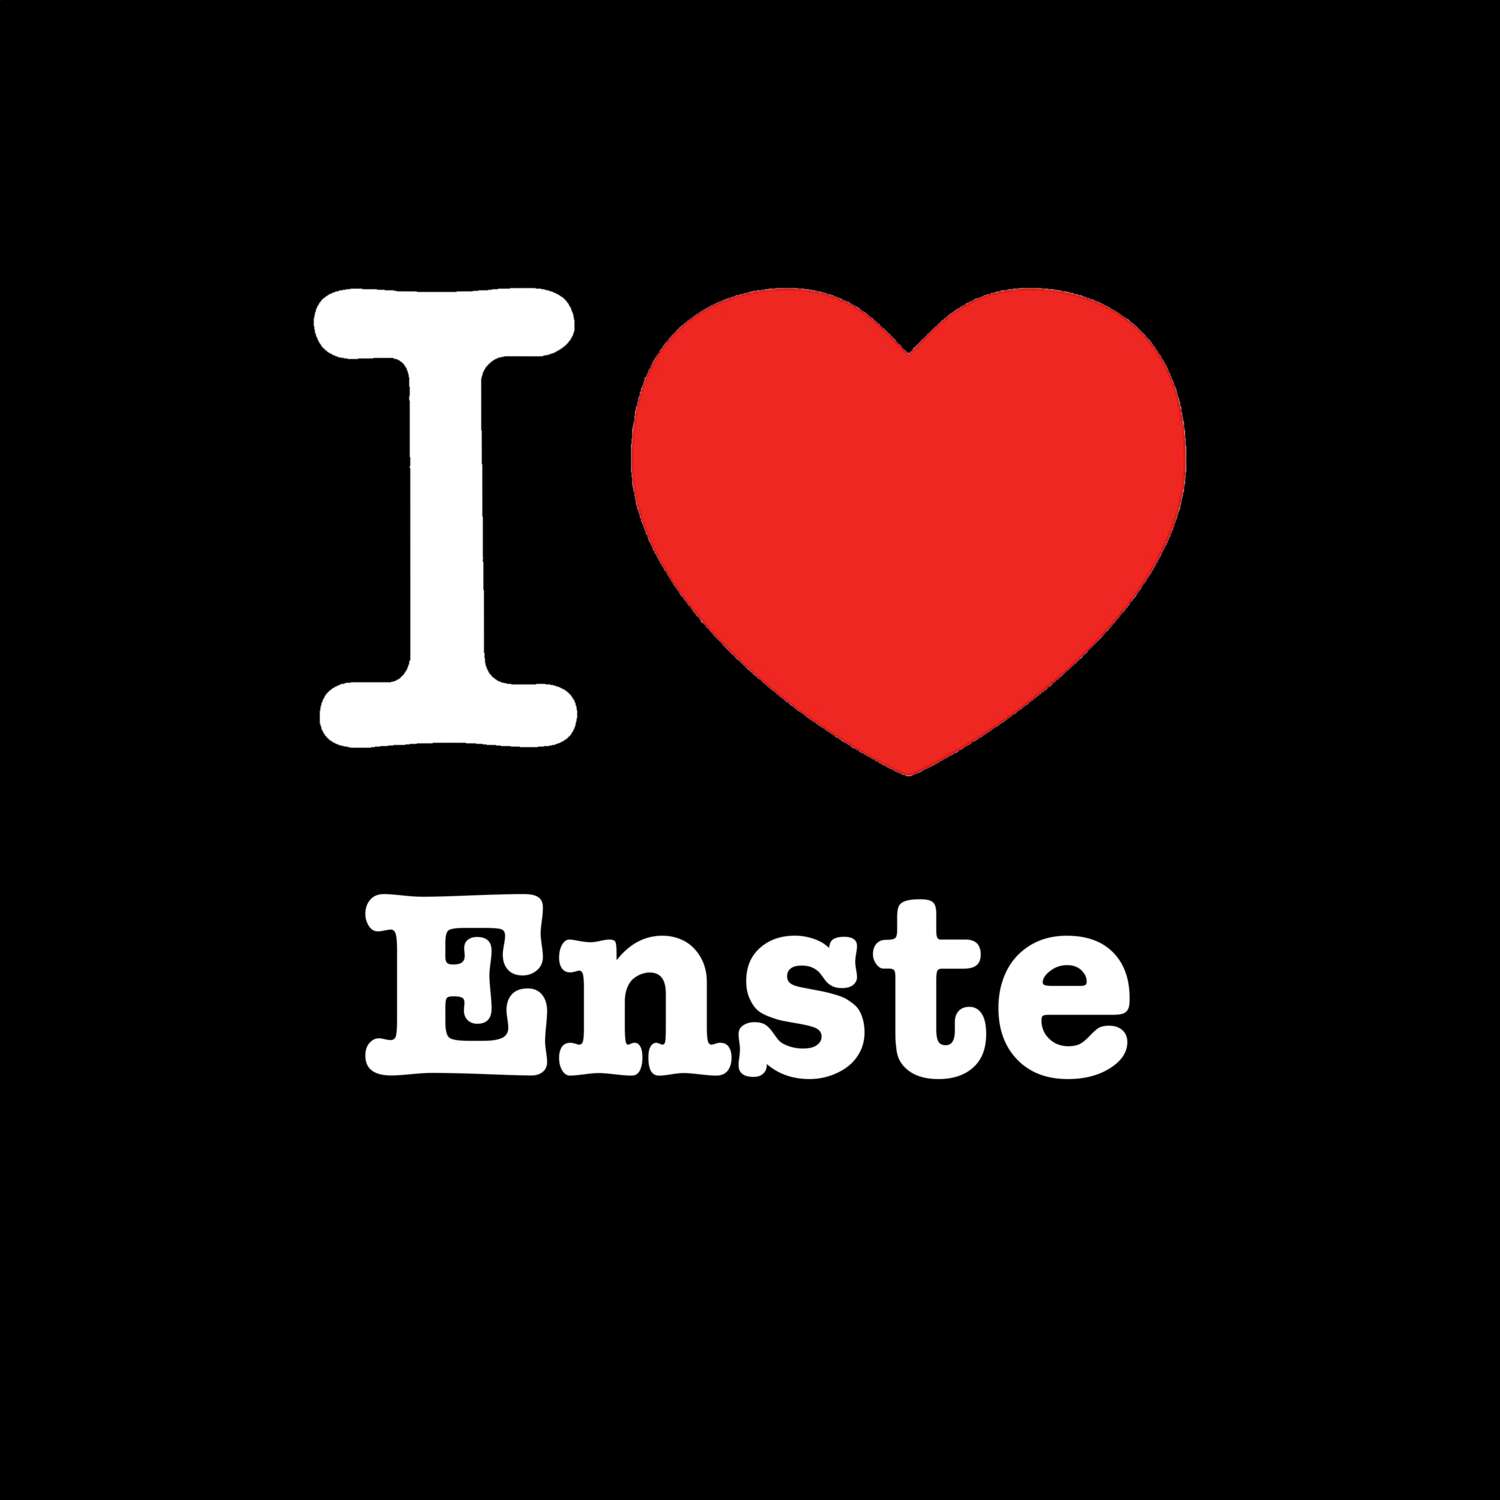 Enste T-Shirt »I love«